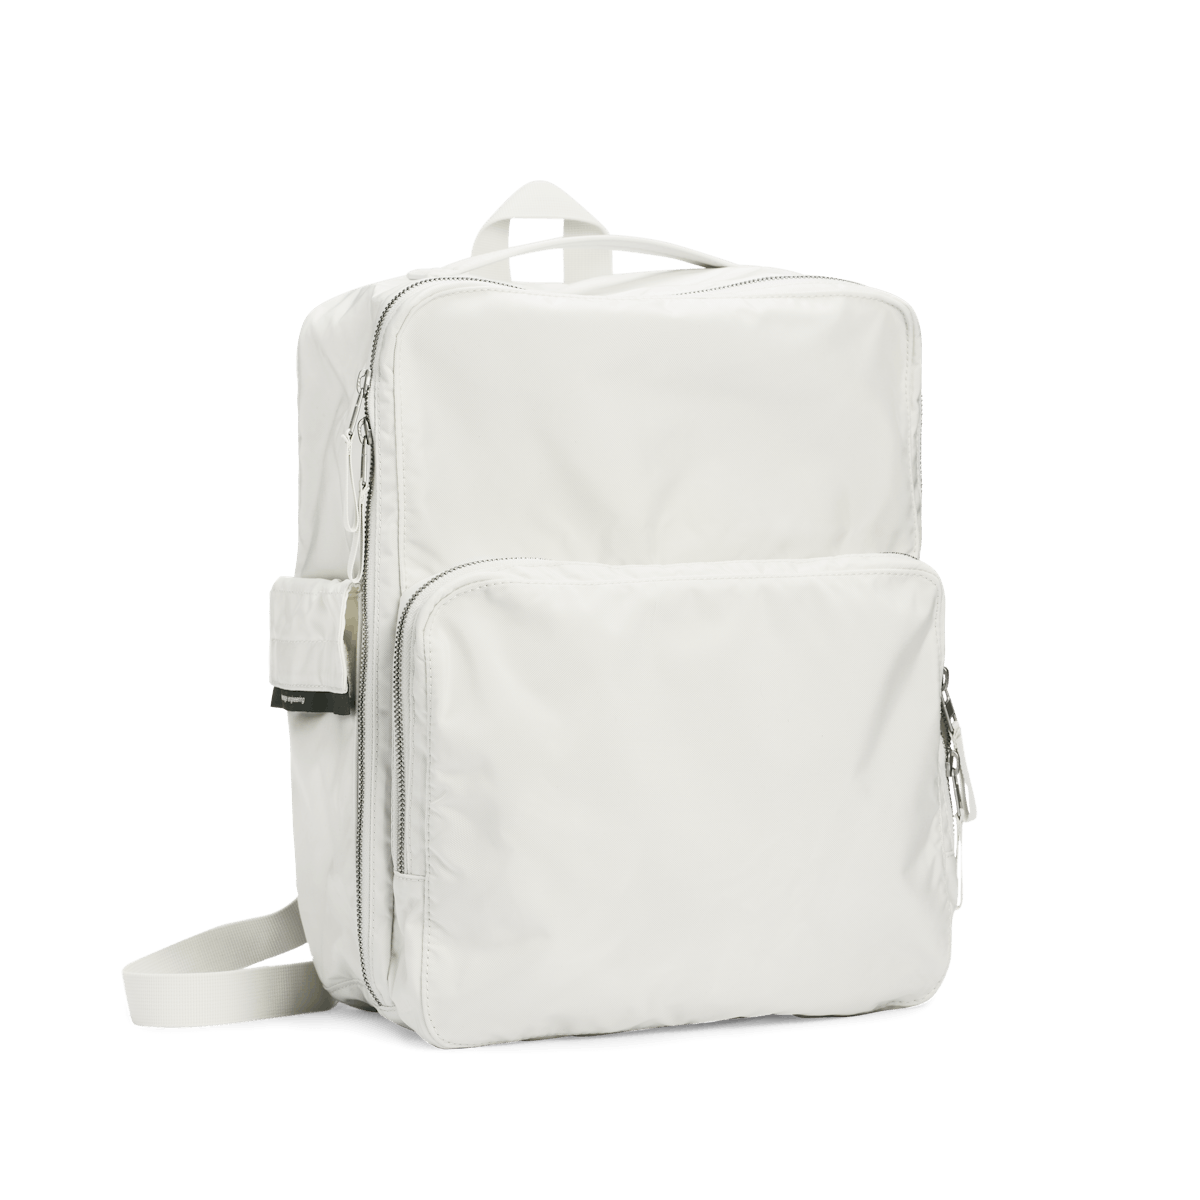 field backpack - teenage engineering